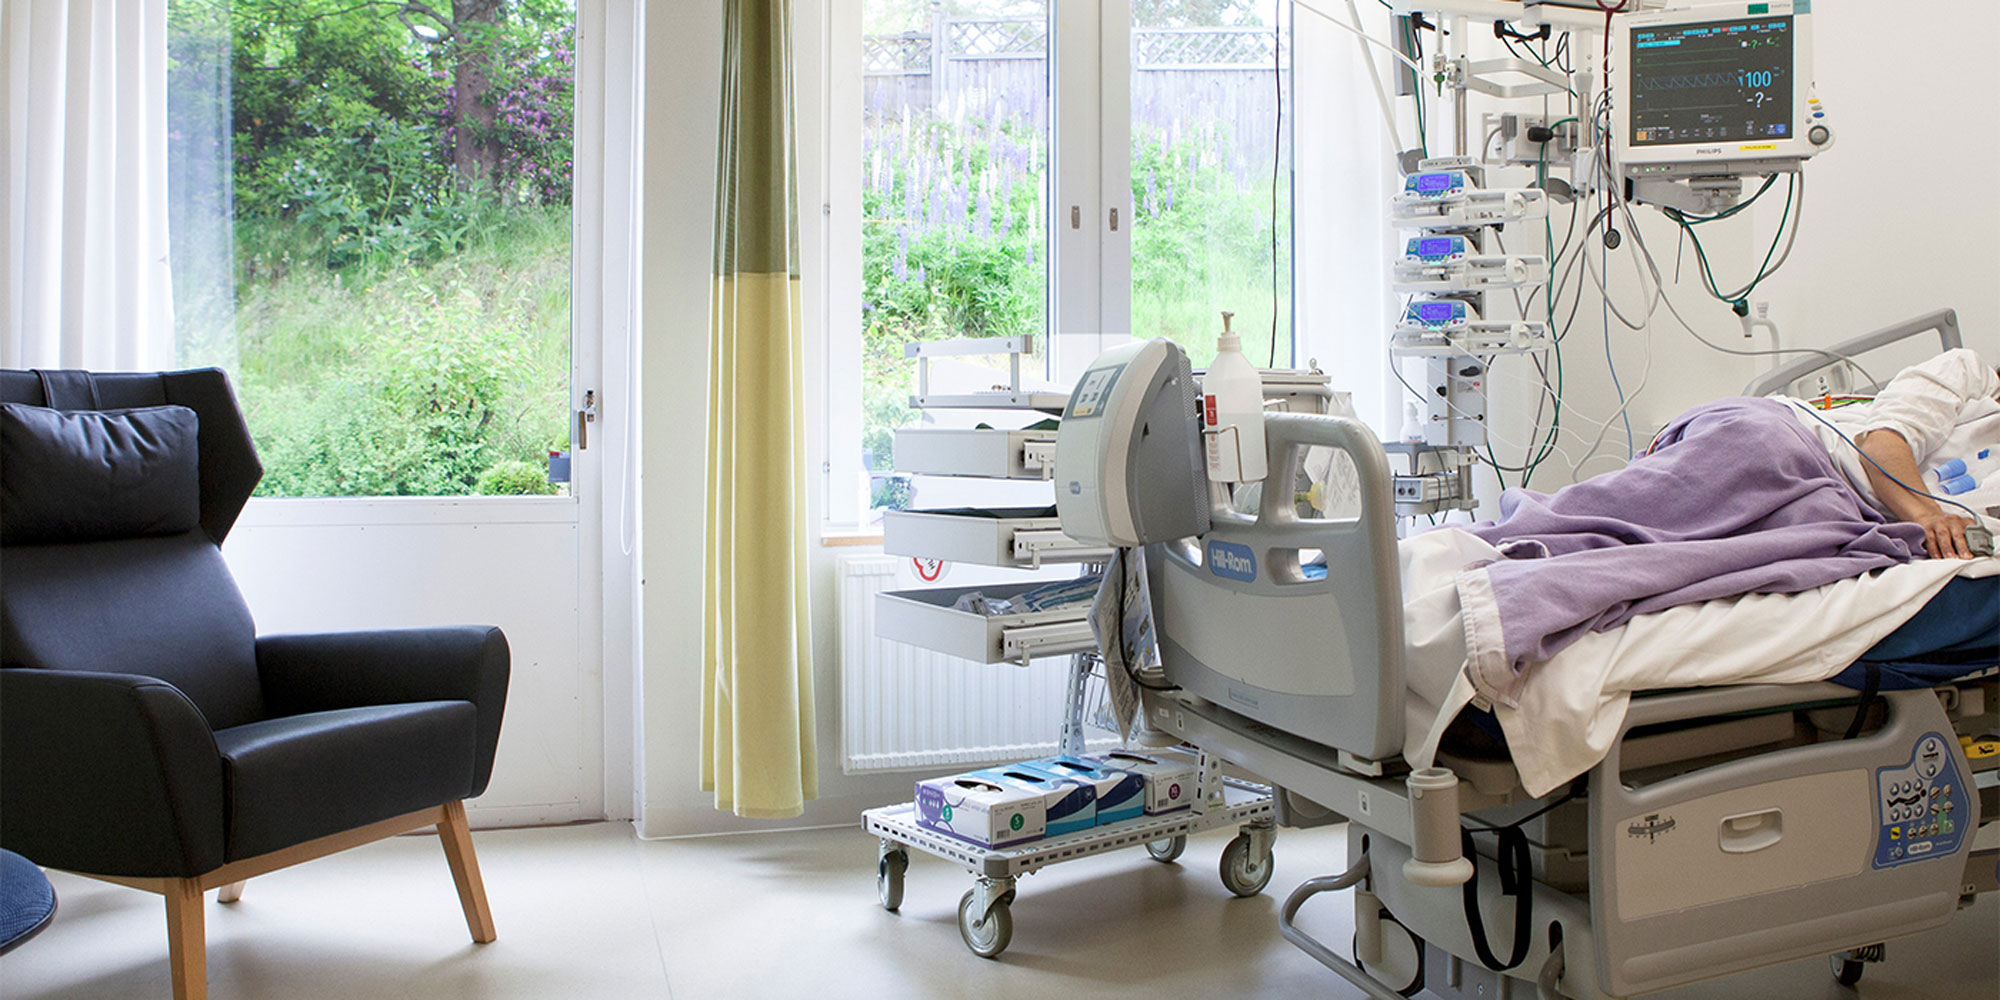 Ett ljust rum på sjukhus avsett för intensivvård, med säng, fåtölj och fönster med skira gardiner.